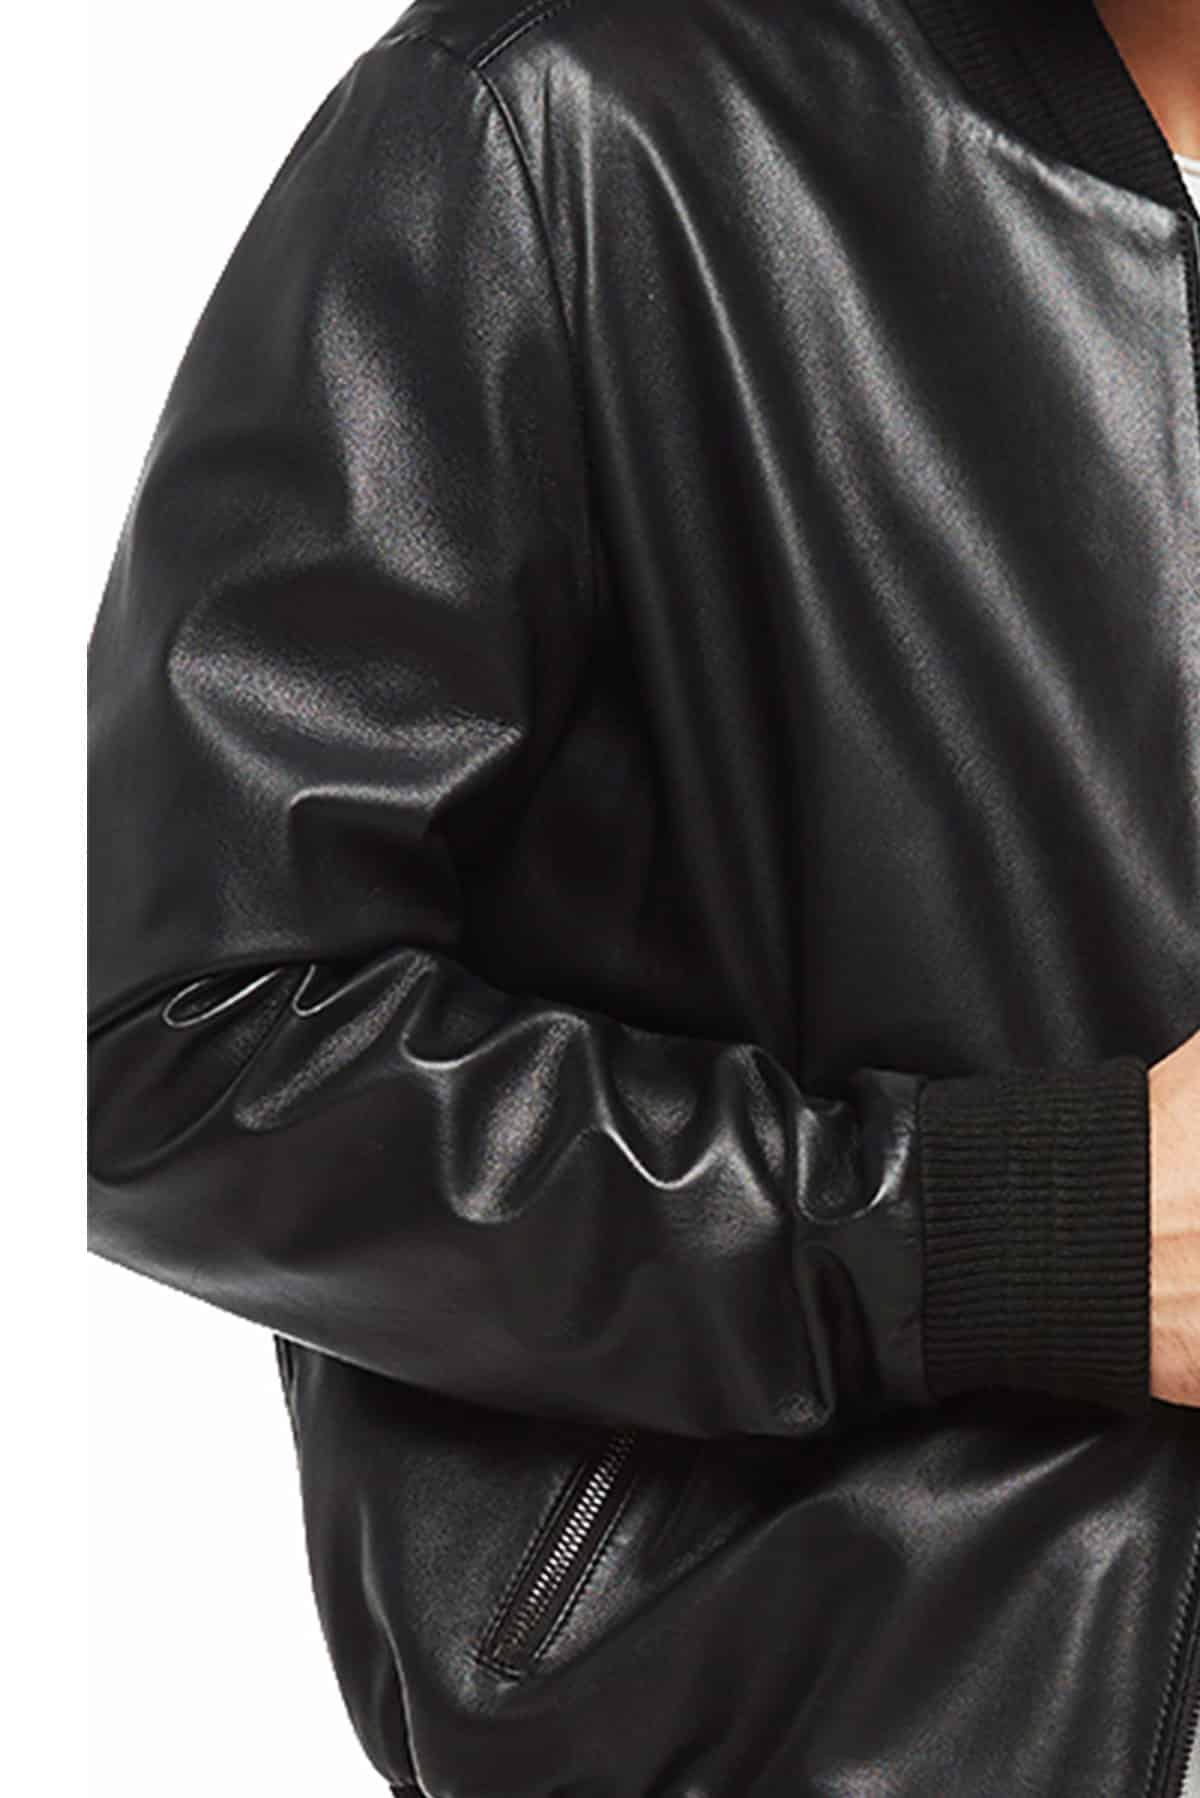 The Nerd Bomber Black Leather Jacket